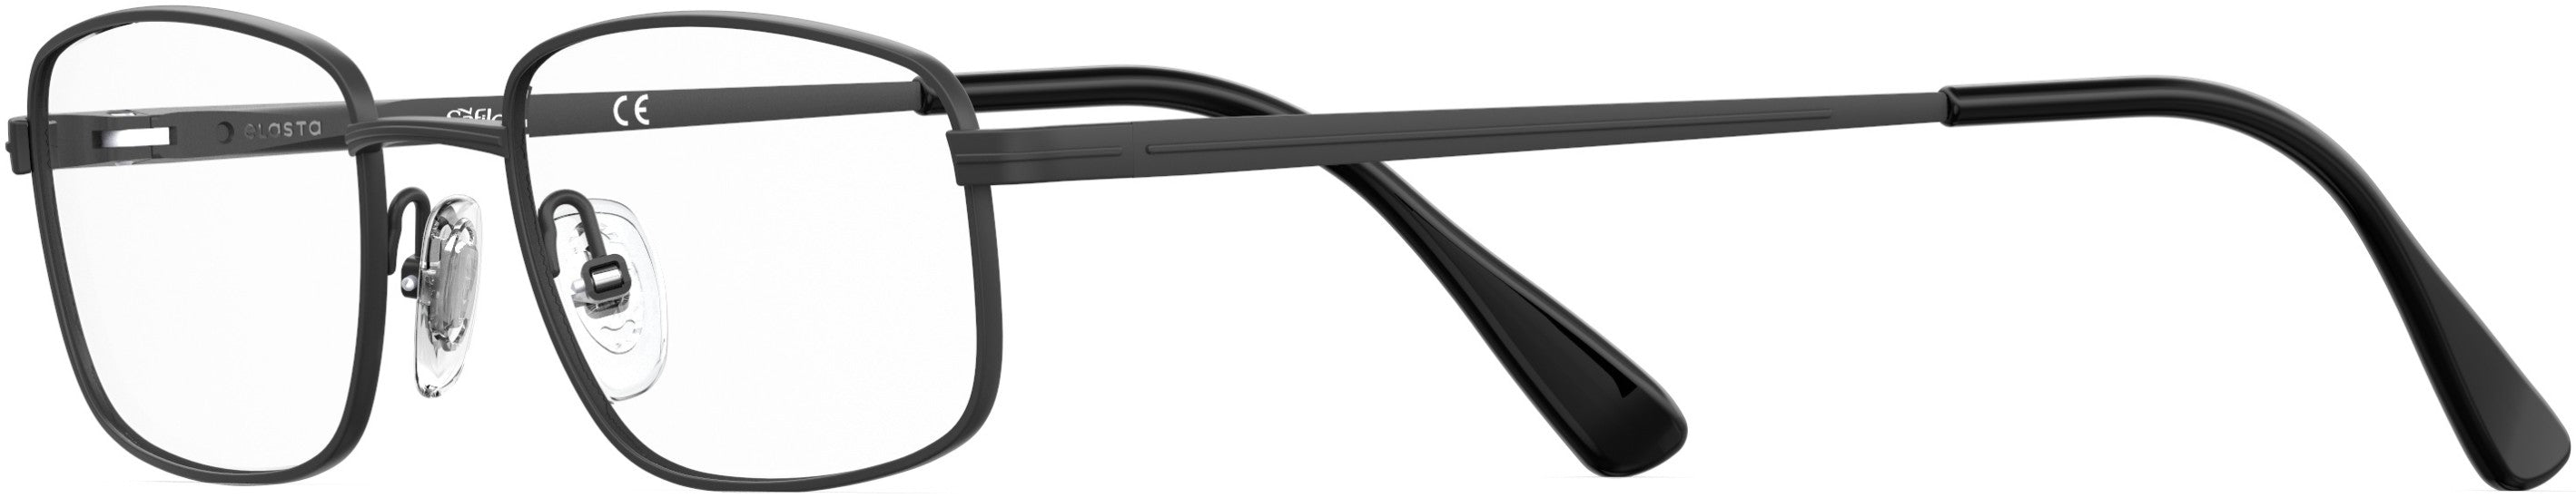  Elasta 7240 Rectangular Eyeglasses 0003-0003  Matte Black (00 Demo Lens)